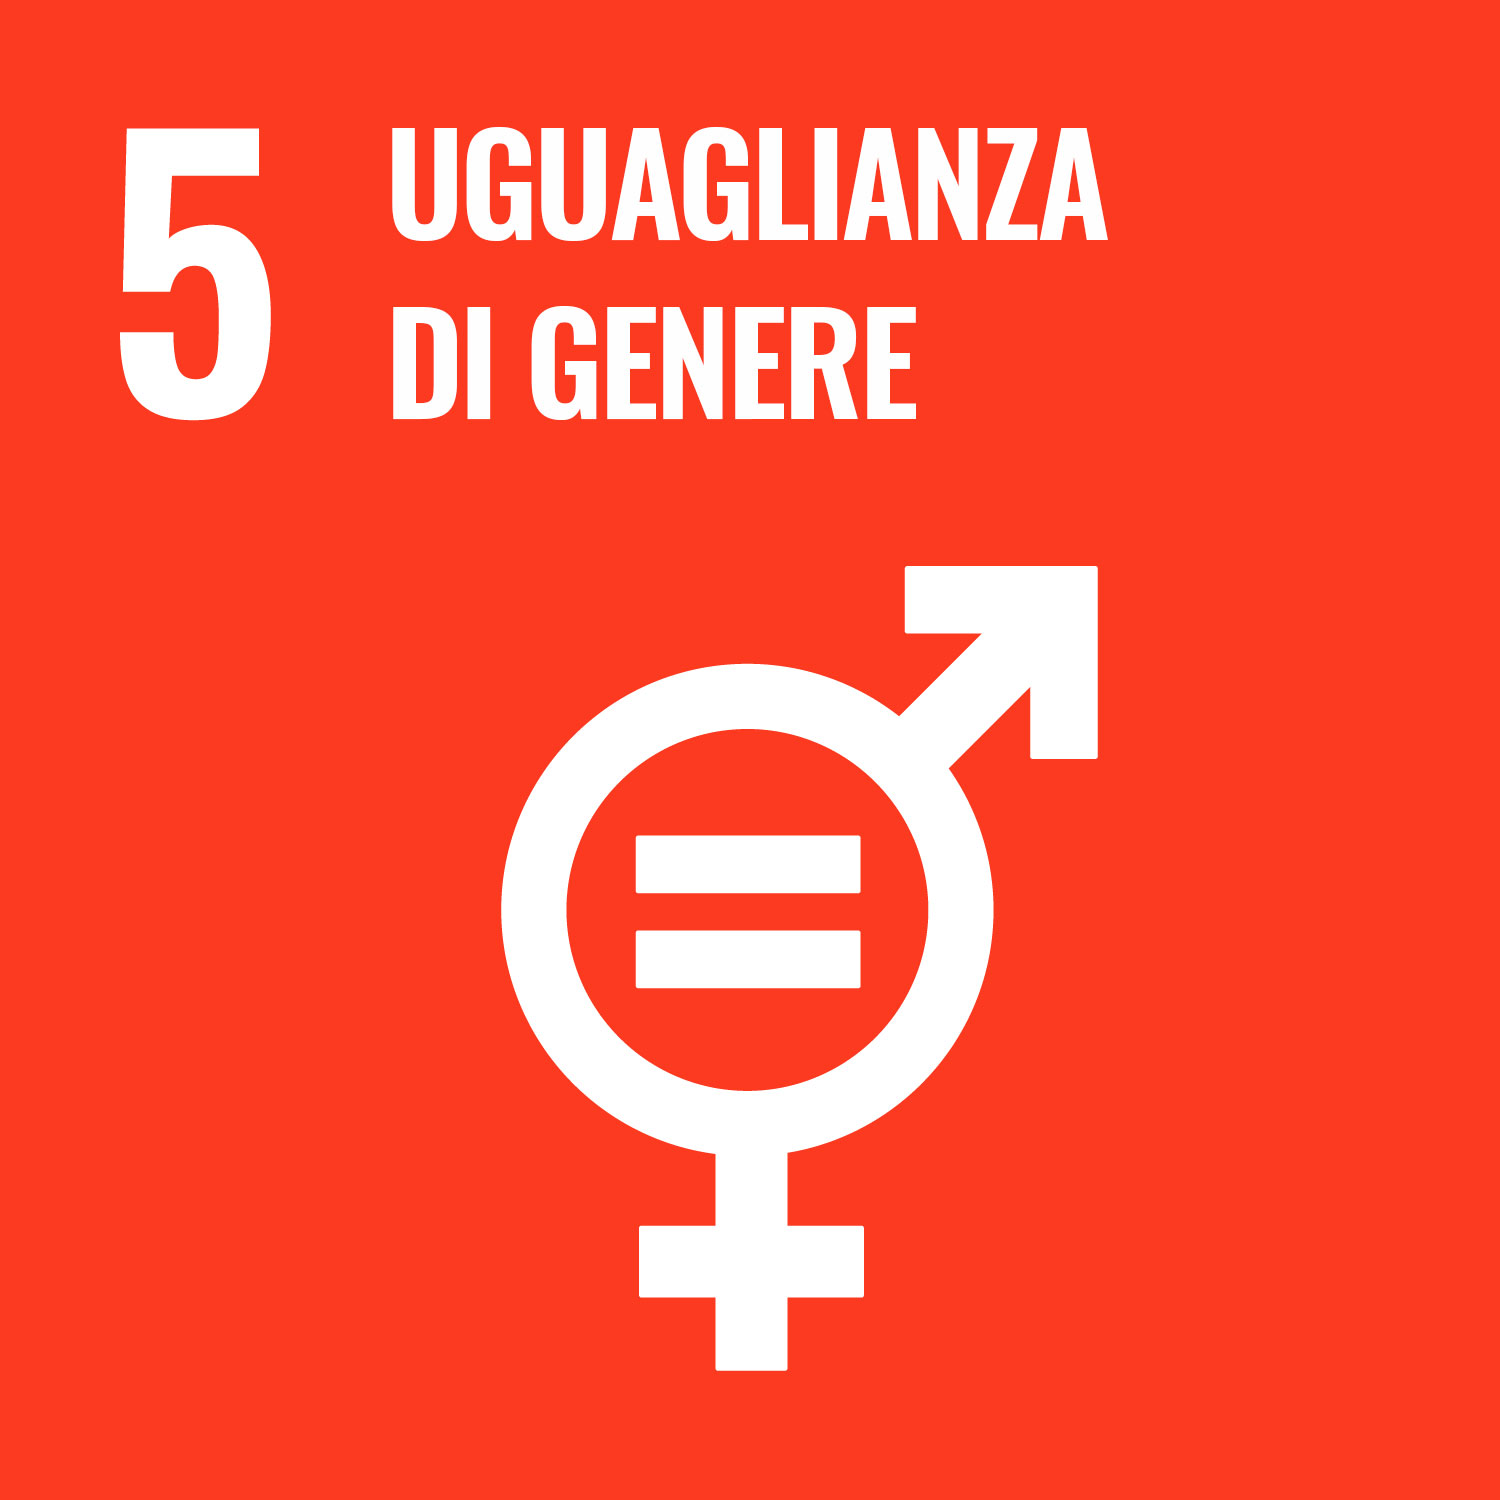 5. Uguaglianza di genere